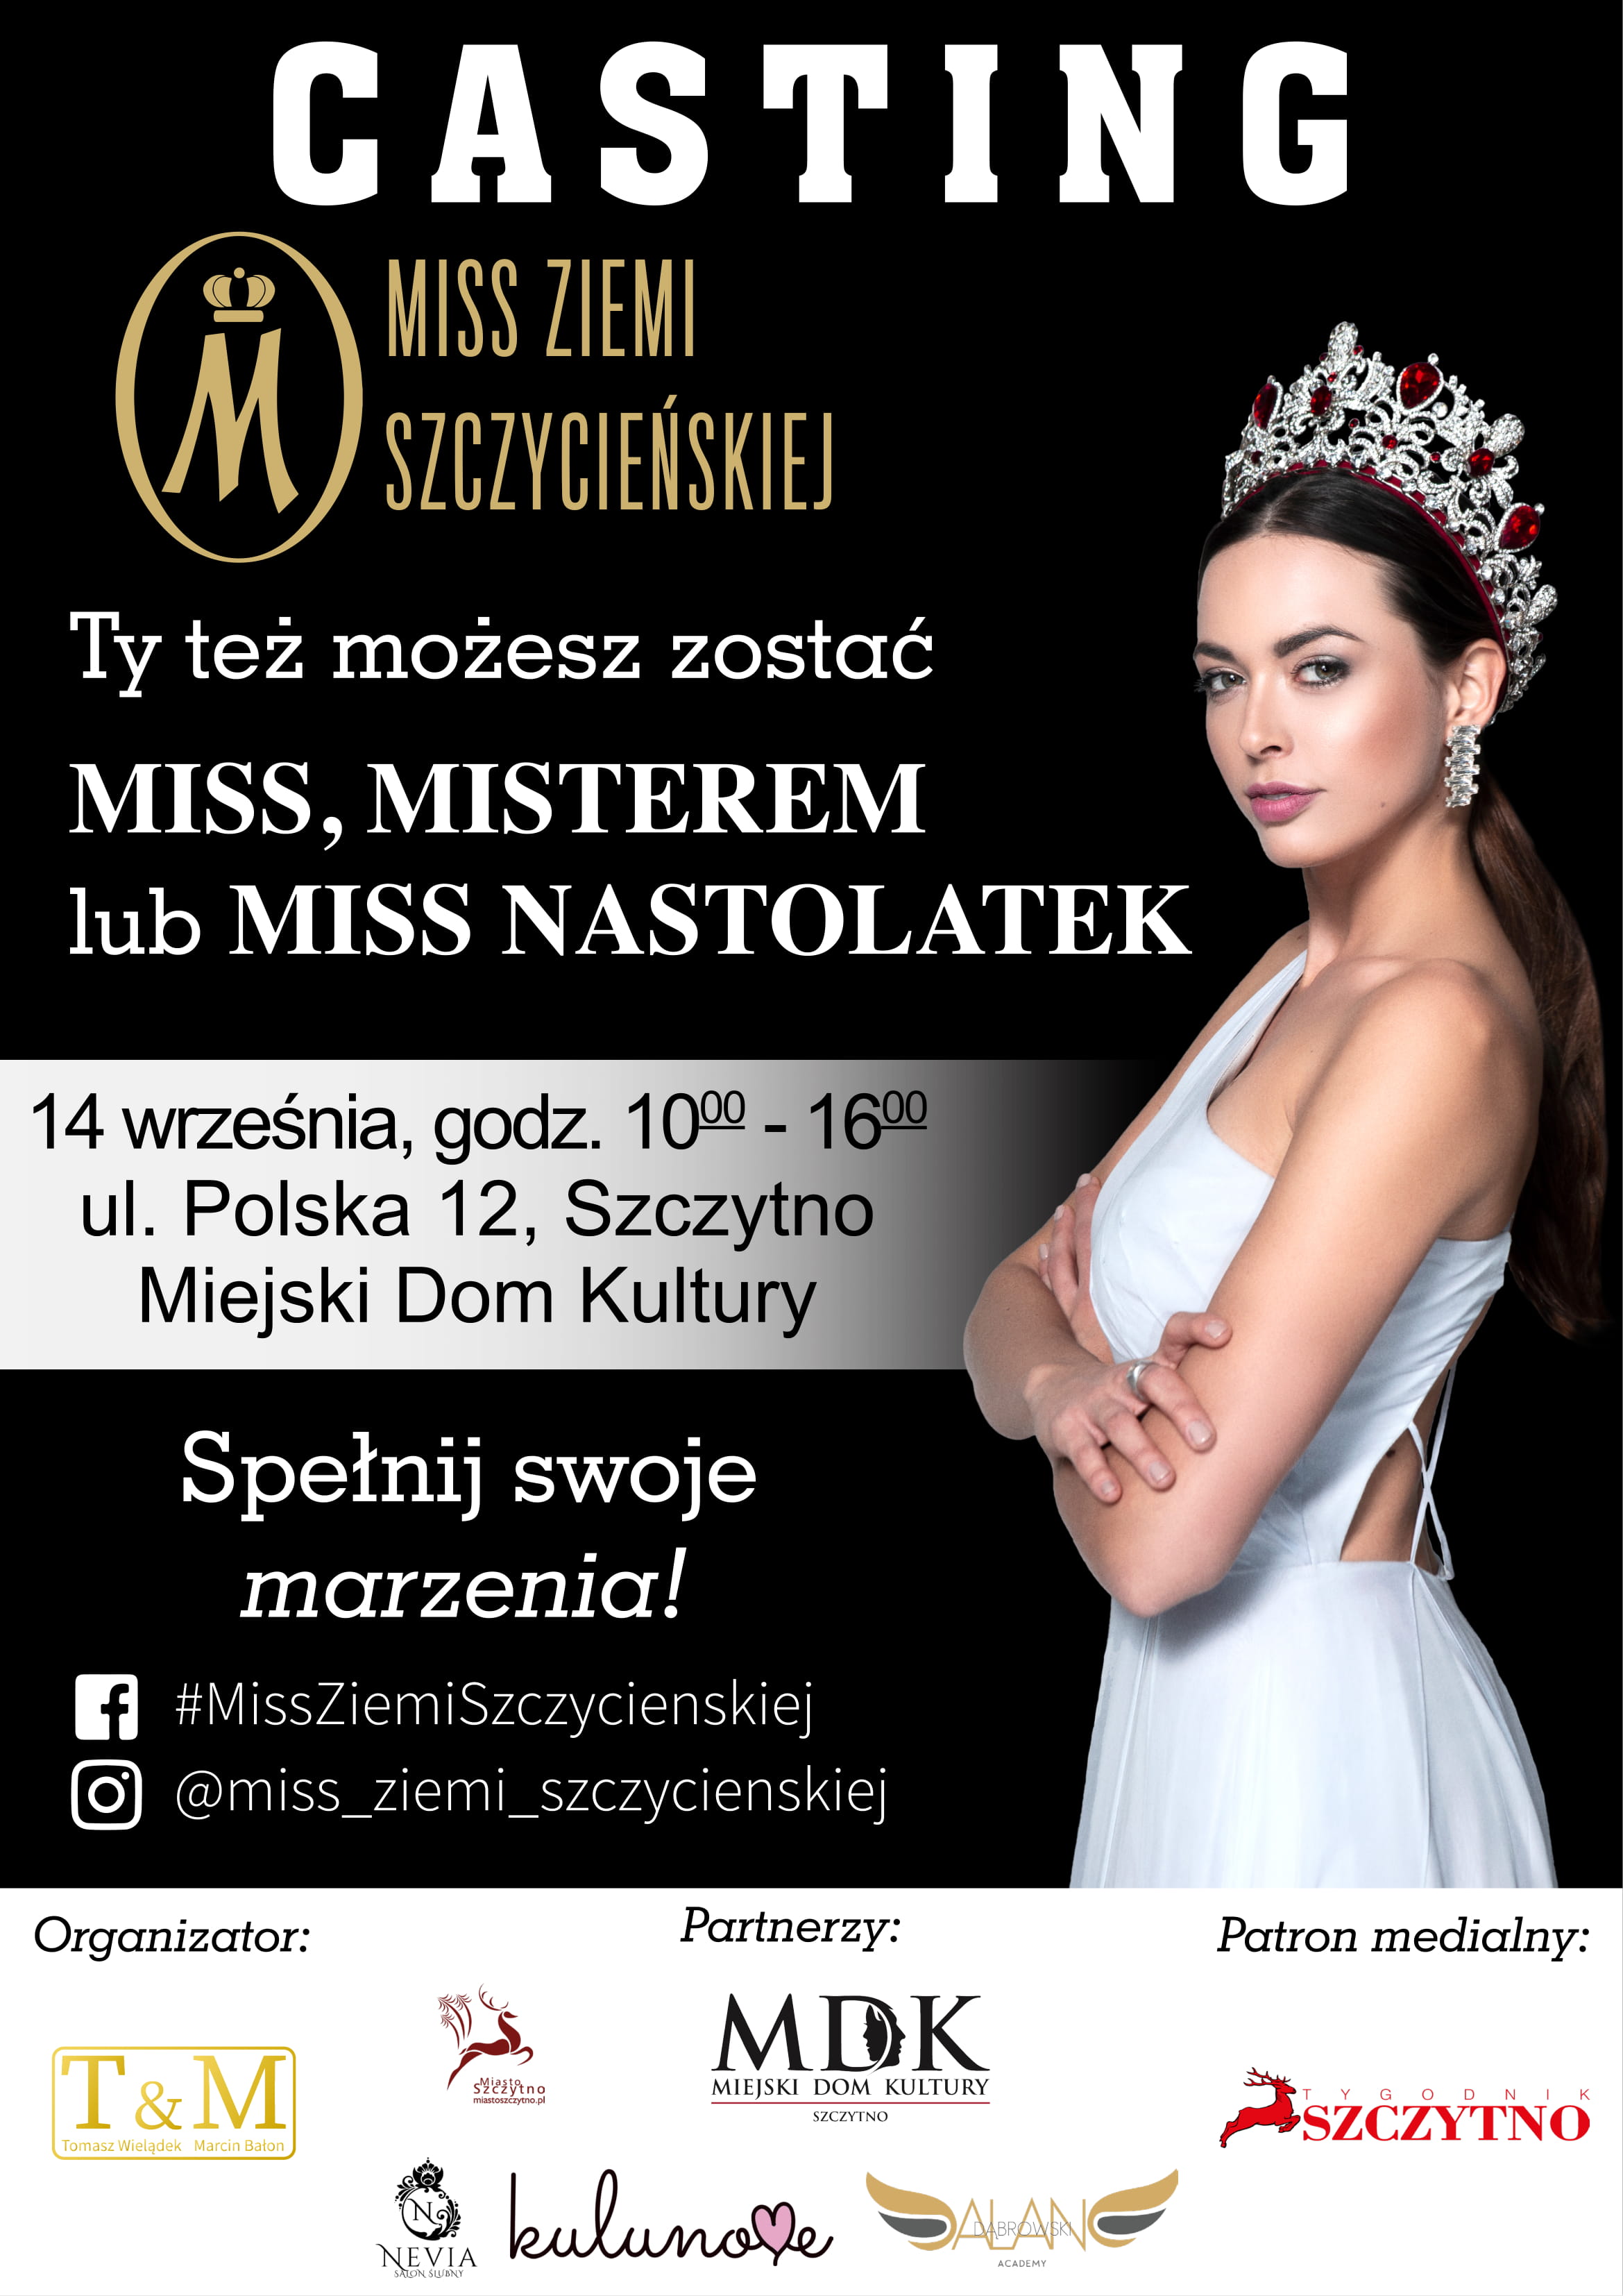 https://m.powiatszczycienski.pl/2019/08/orig/plakat-1-24359.jpg